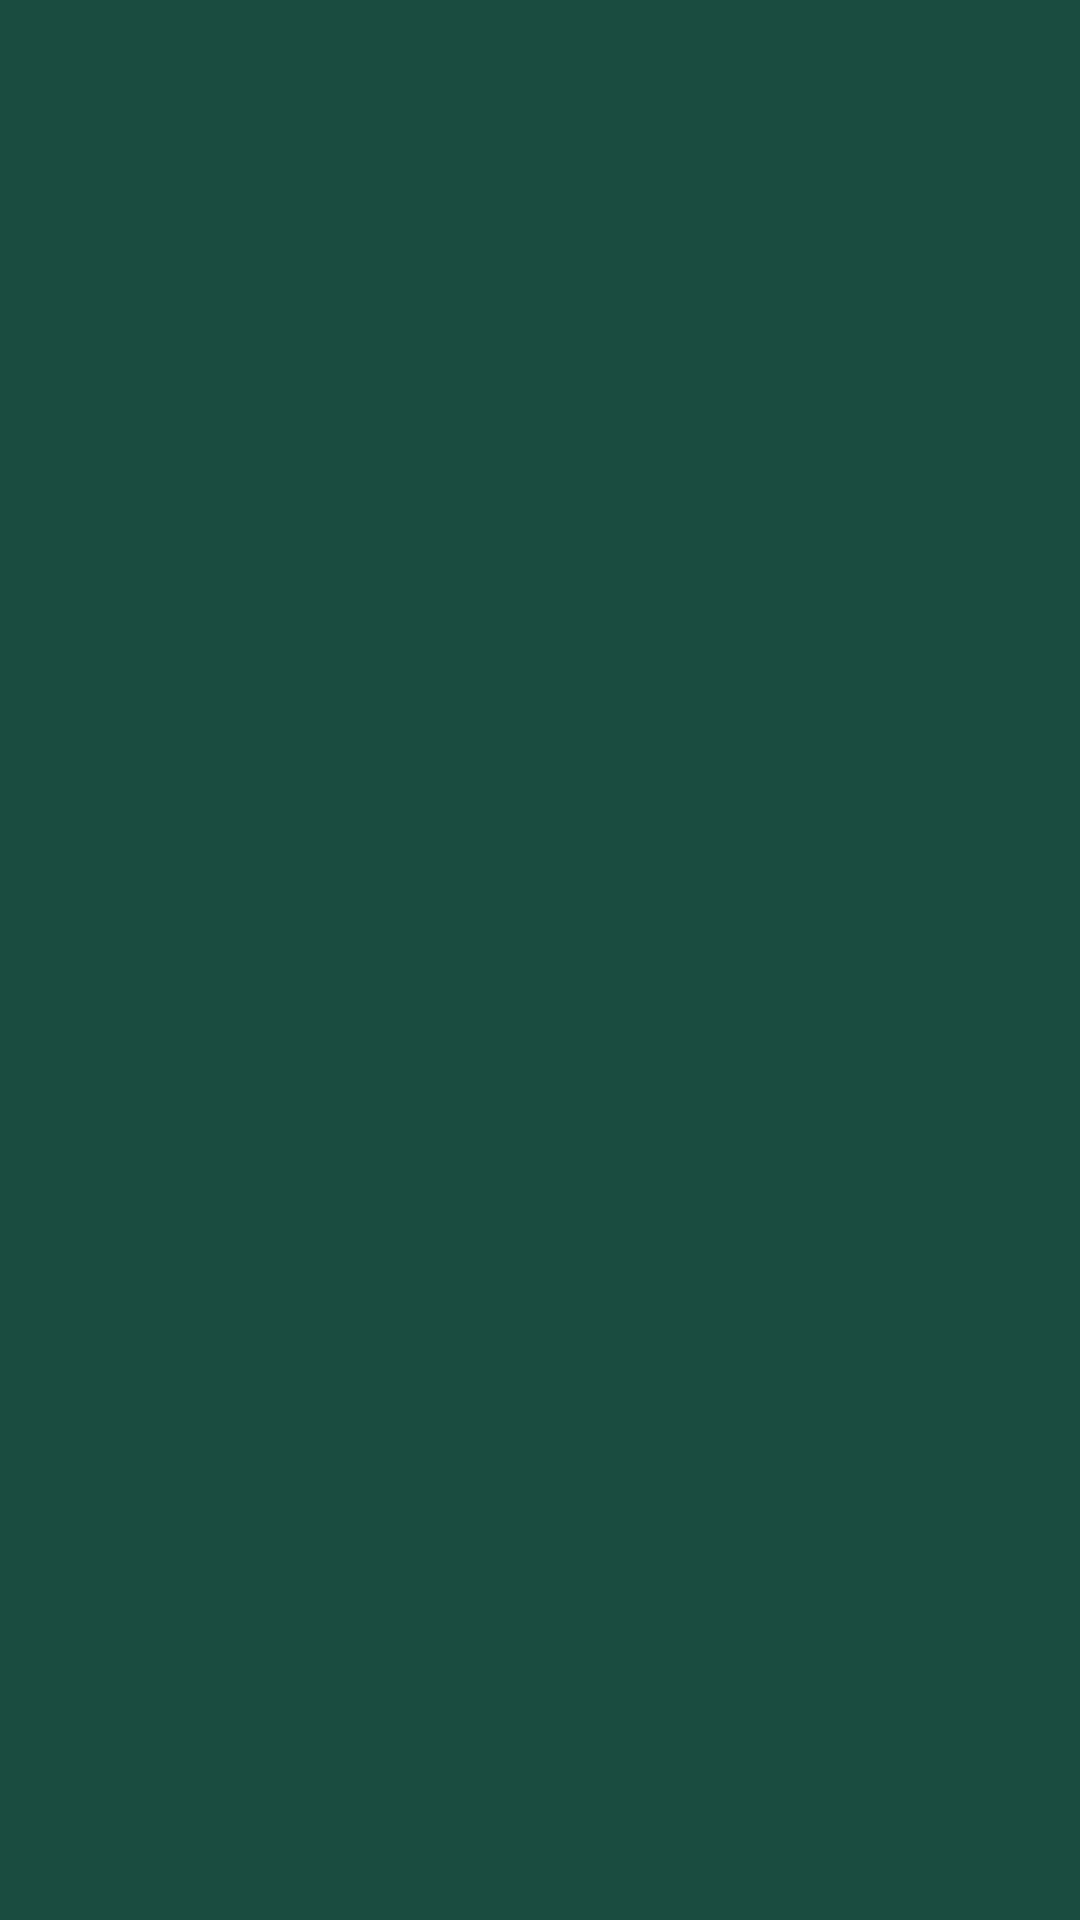 Papelde Parede De Cor Verde Esmeralda 2160 X 3840. Papel de Parede